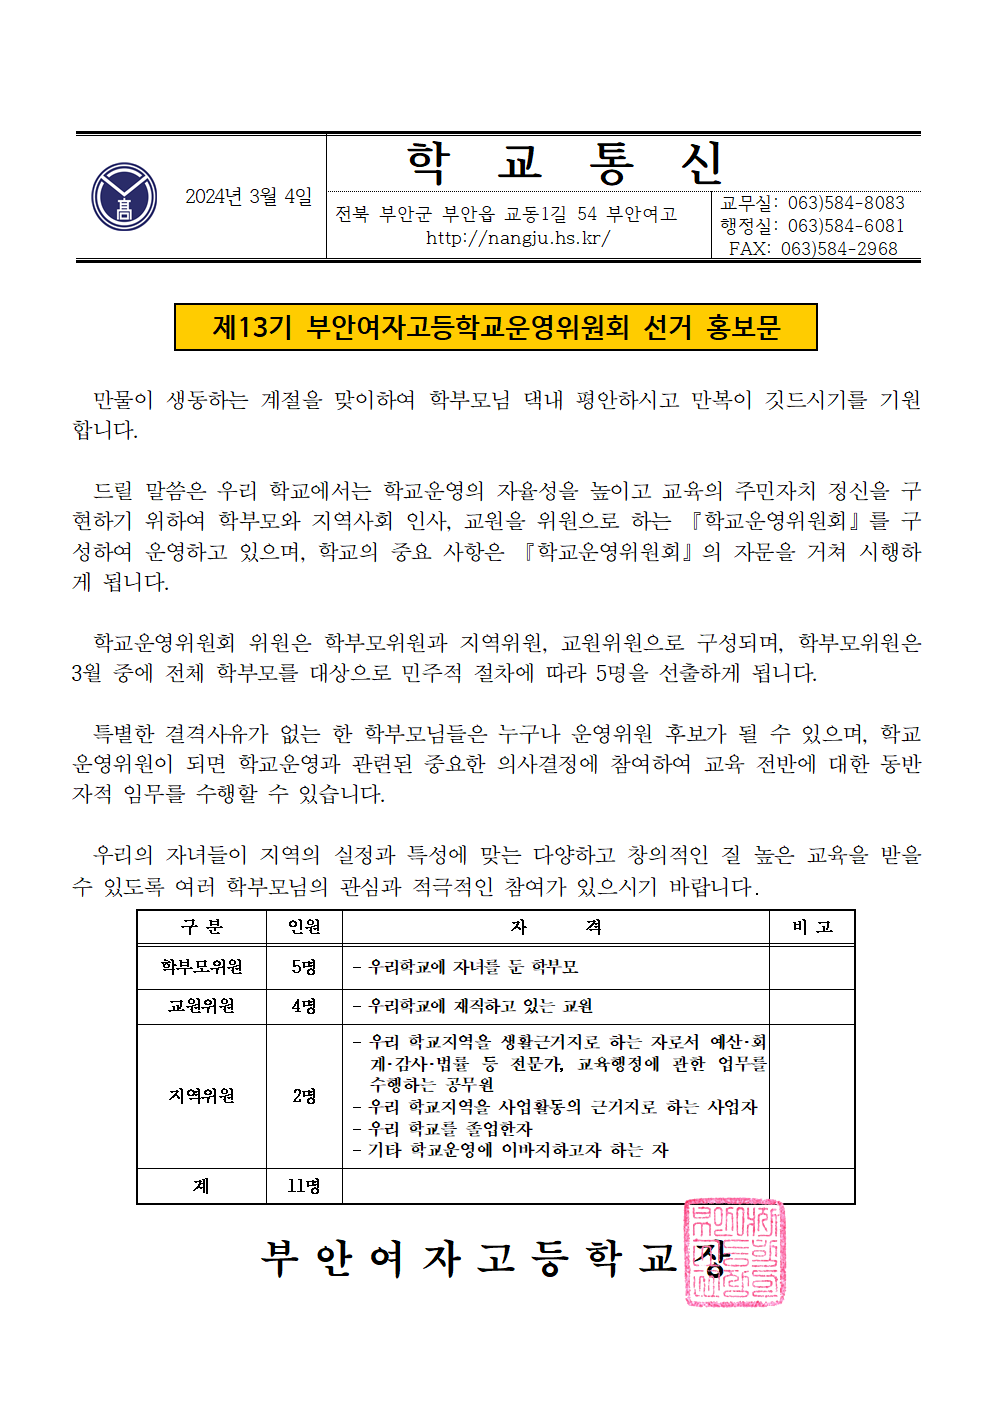 서식 2 - 1 학교운영위원회 선출을 위한 사전 홍보 - 가정통신문001